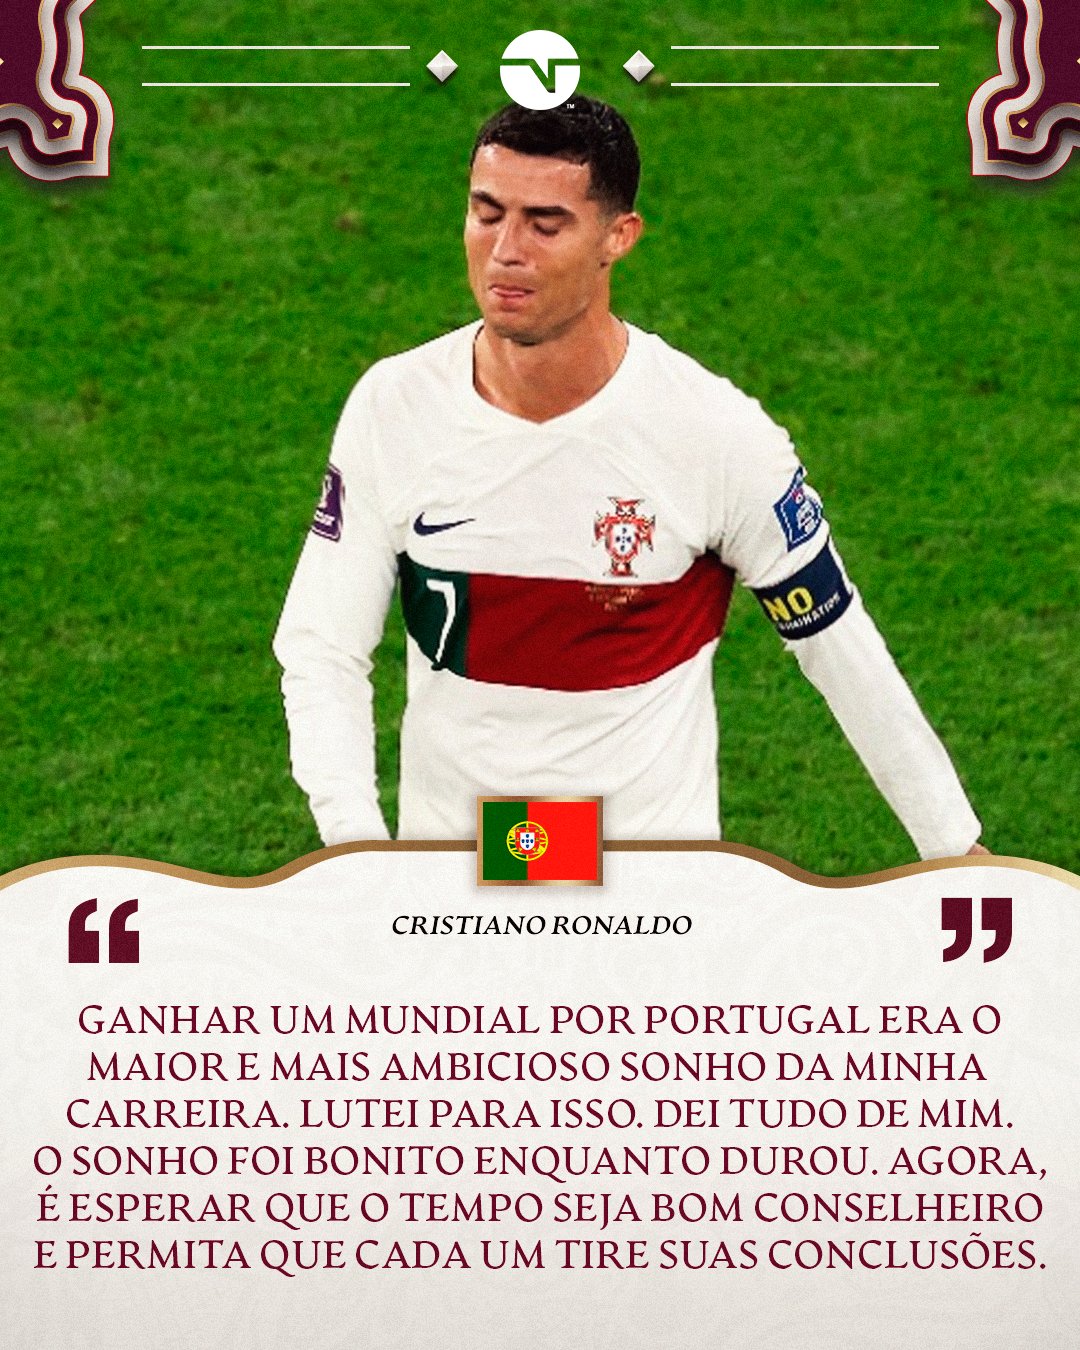 TNT Sports BR on X: DIZEM QUE O CARA É INDIVIDUALISTA 👀 Cristiano deu o  recado sobre Portugal ainda não ter vaga na Copa. Acha que ele está certo?  O jogo de